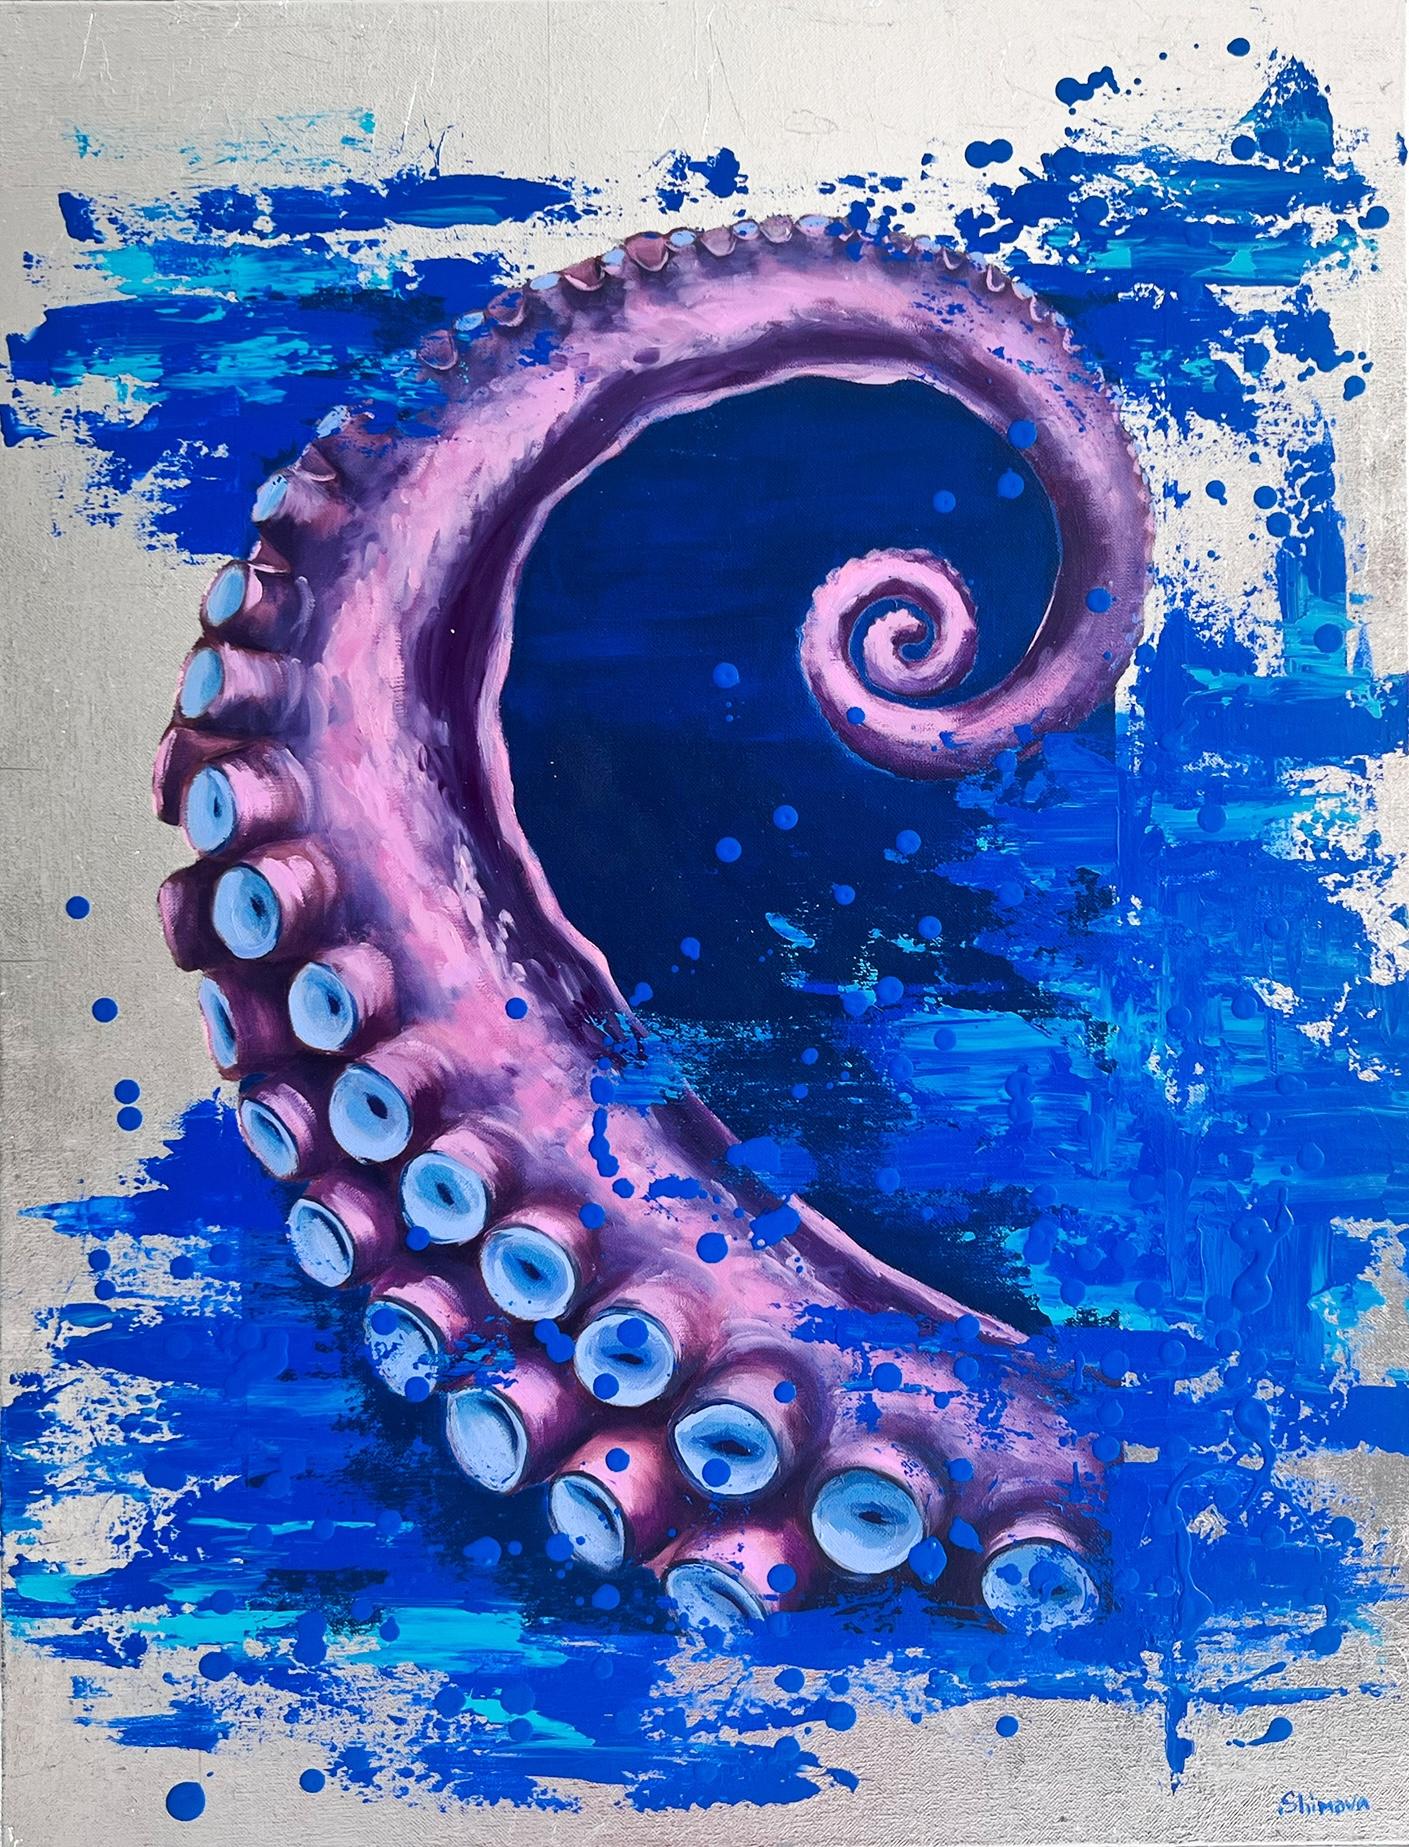 „Octopus“, Ölgemälde 33" x 26" Zoll von Alina Shimova 

PURE SOUL-Reihe 
Shimova kümmert sich um die Erhaltung der Tierwelt. Sie macht die Öffentlichkeit auf die Probleme von Tieren aufmerksam, insbesondere von wilden und gefährdeten Arten. Shimova